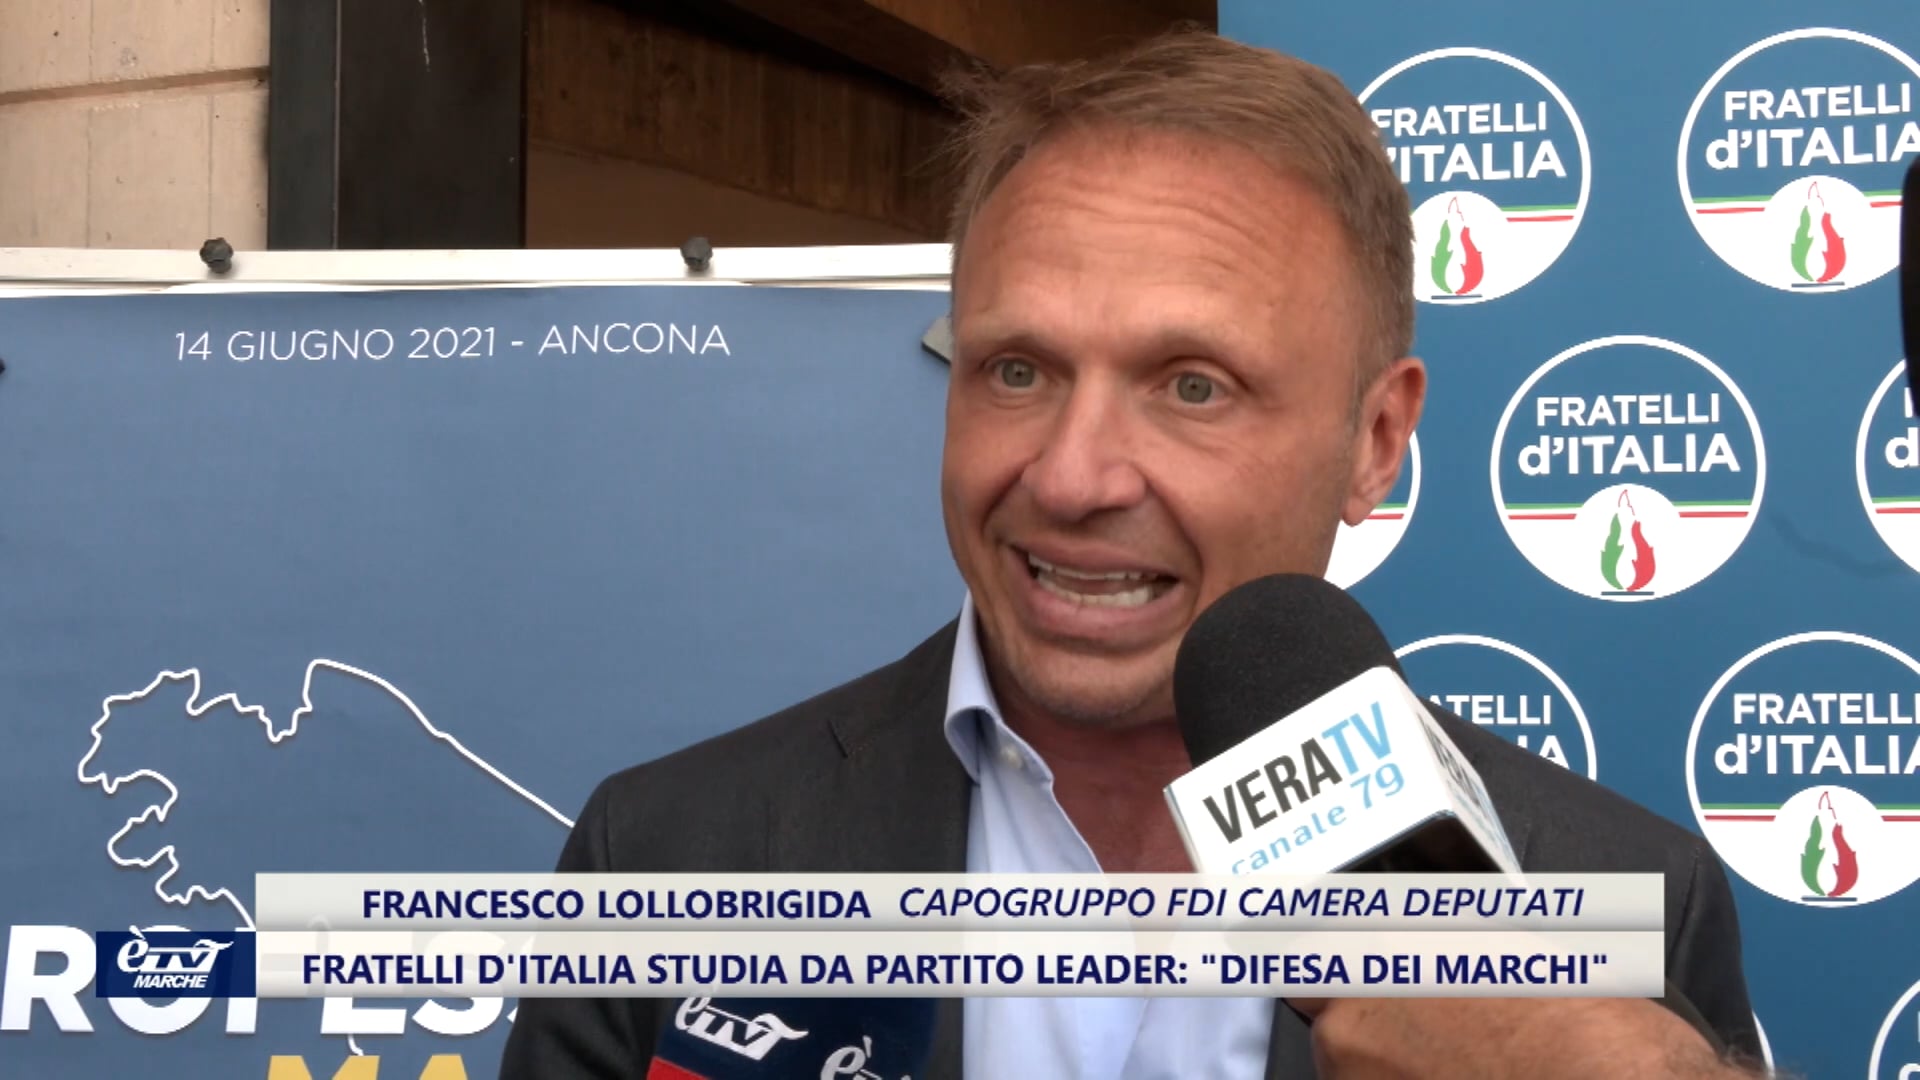 Fratelli D'Italia studia da partito leader e punta al popolo delle partite Iva - VIDEO